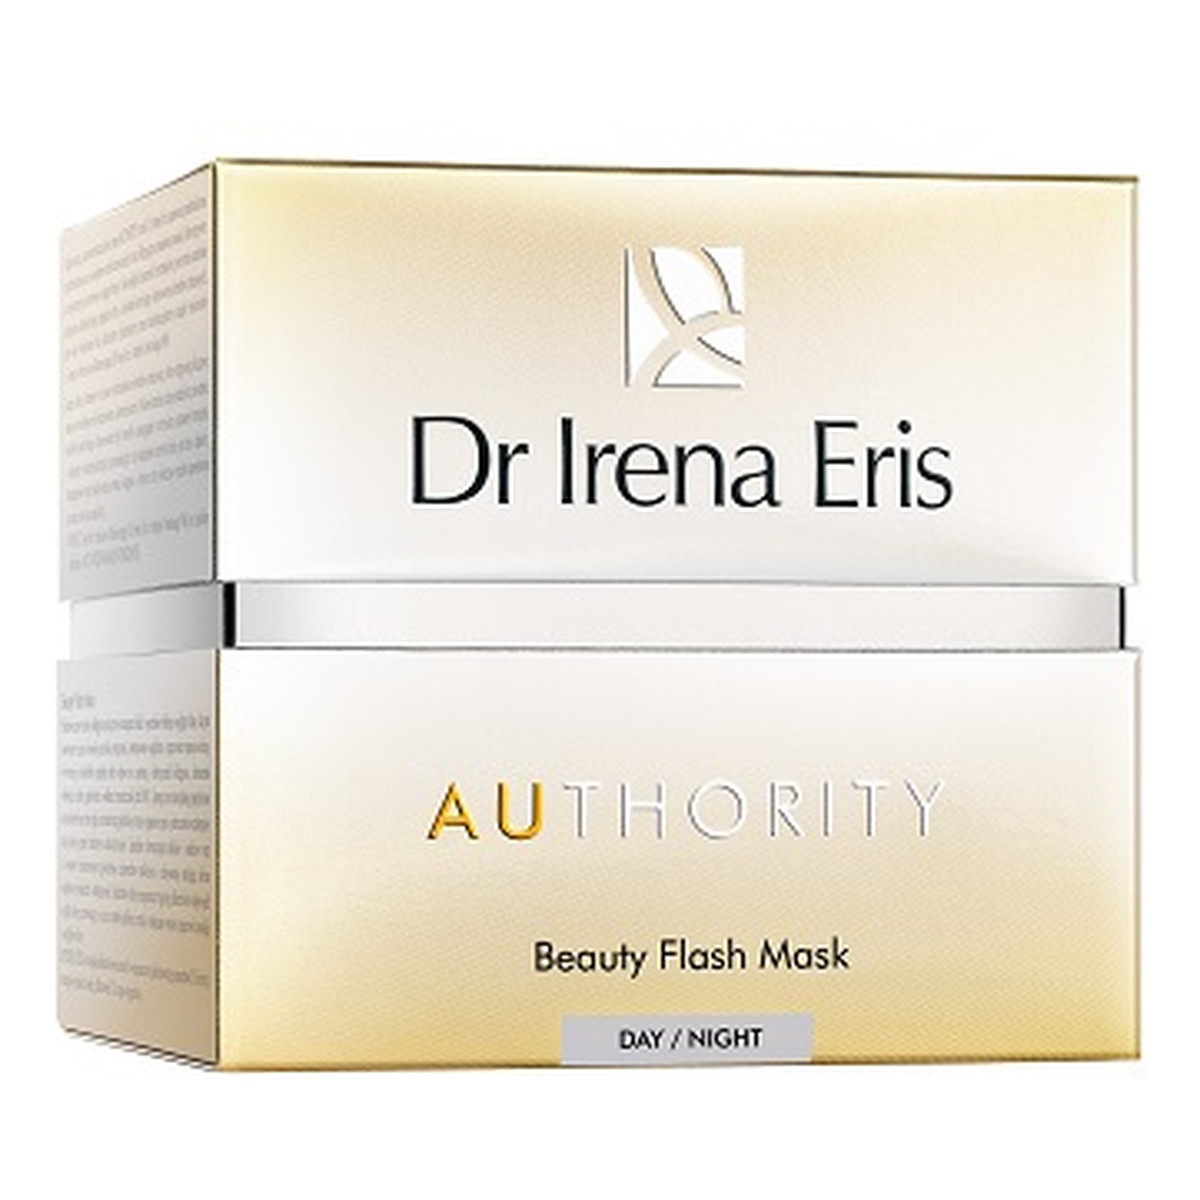 Dr Irena Eris Authority Beauty Flash Mask Błyskawiczna maska przywracająca blask i młodszy wygląd skóry 50ml